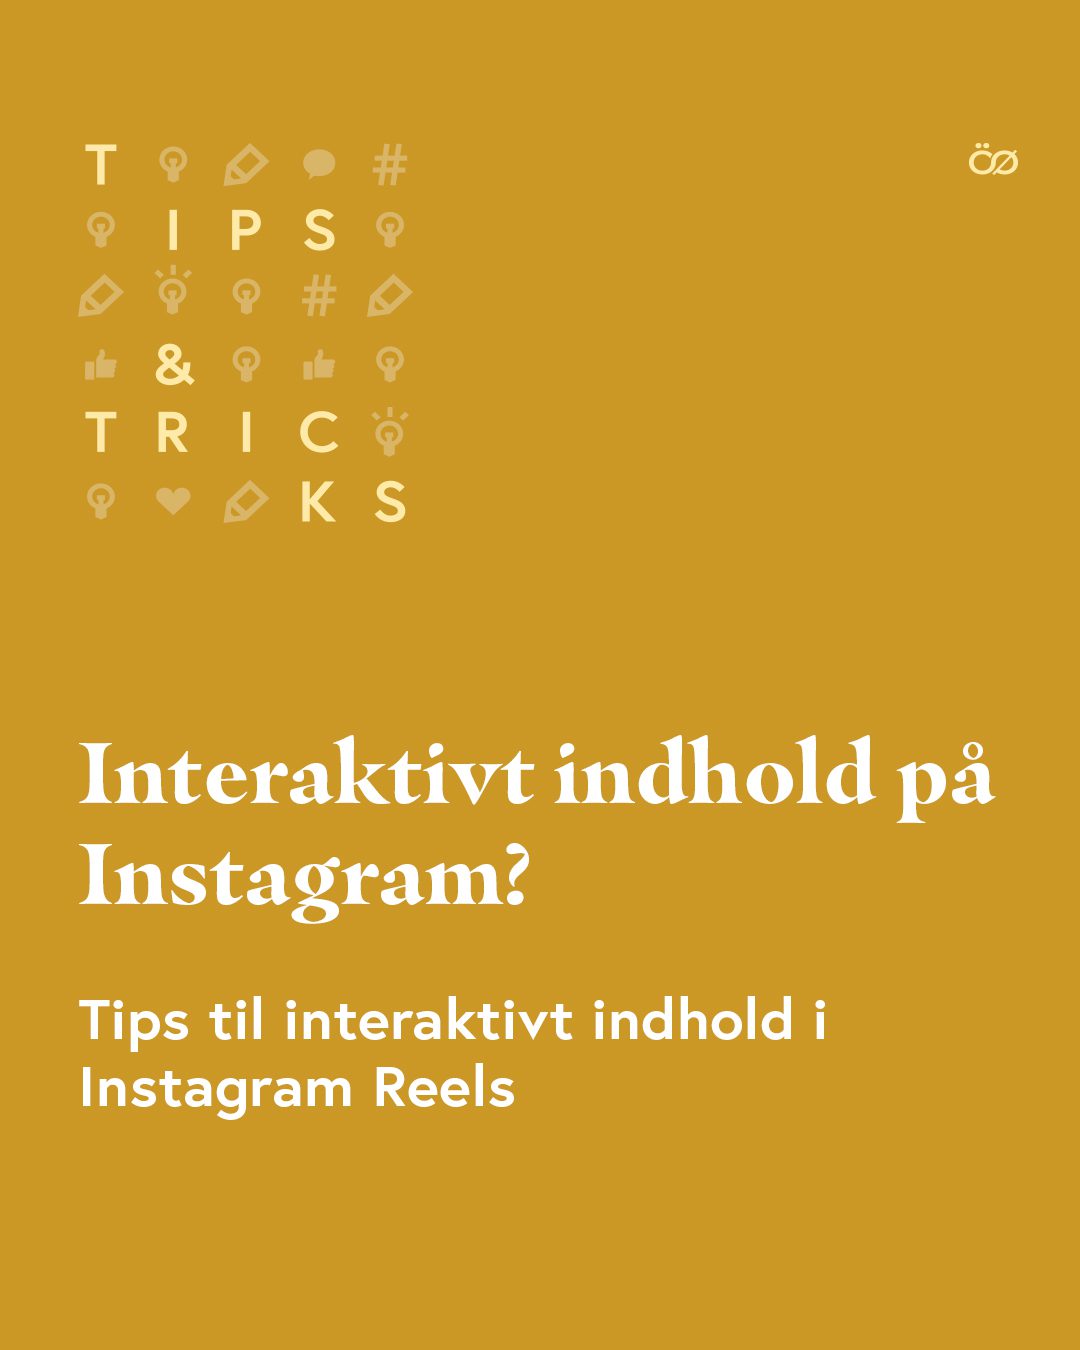 Skab interaktivt indhold med Instagram Reels